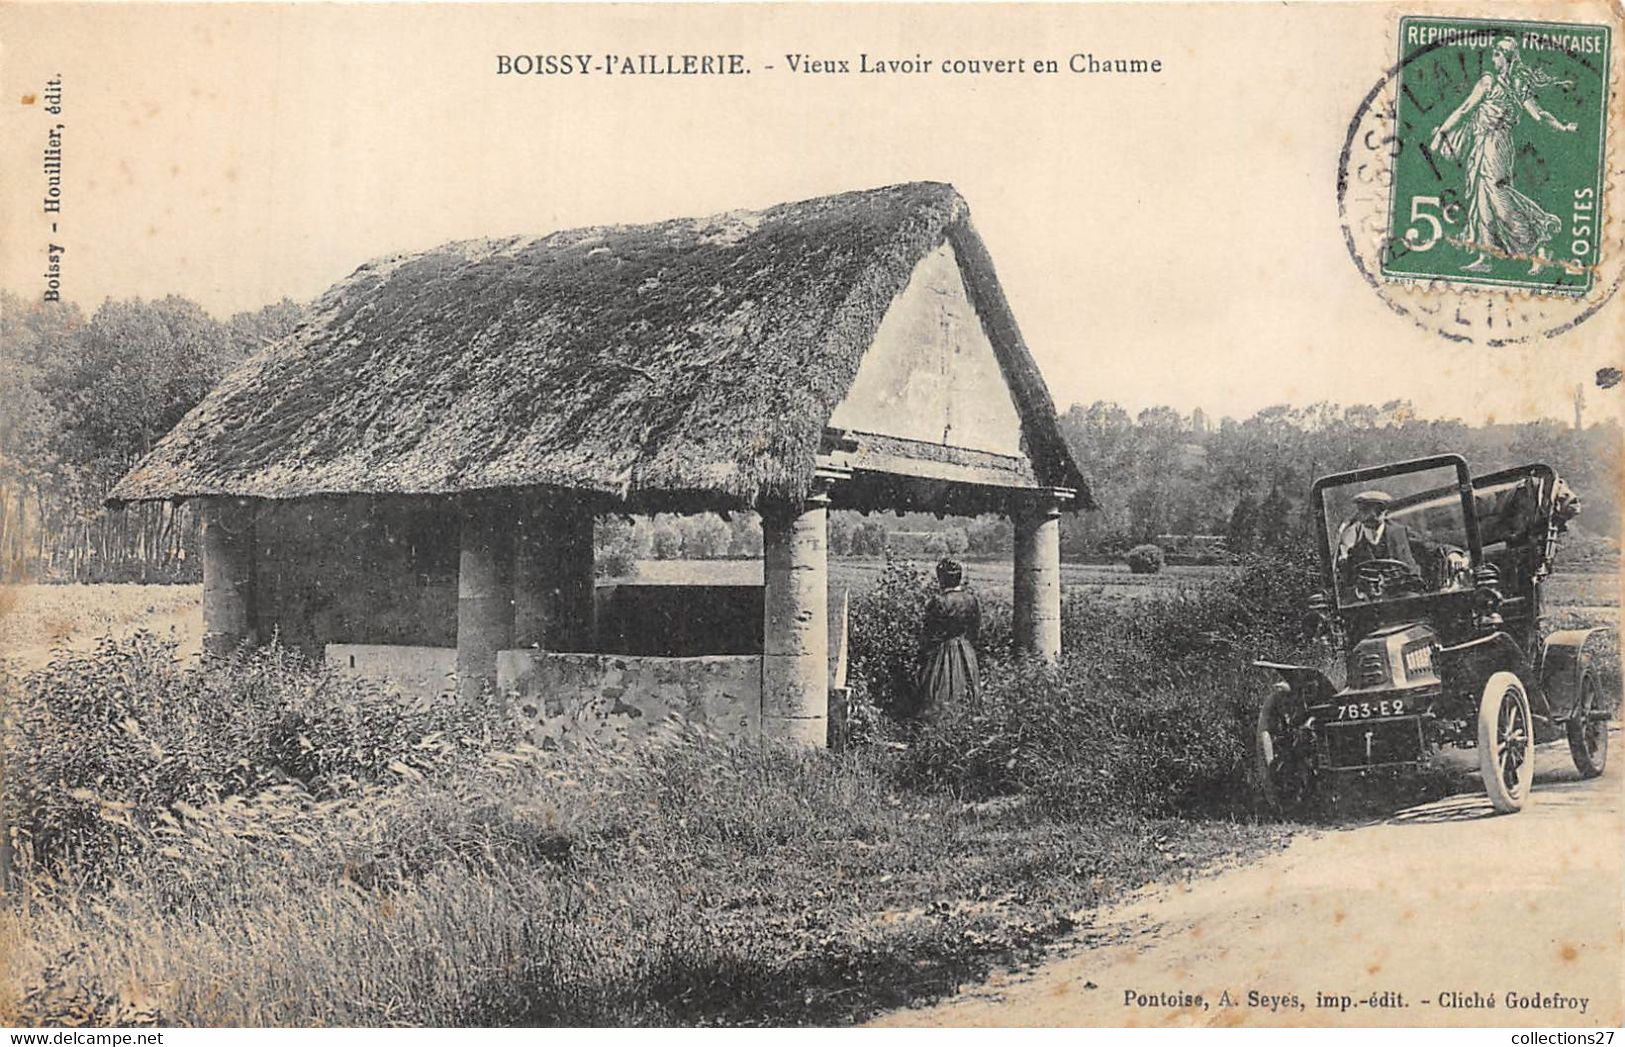 95-BOISSY-L'AILLERIE- VIEUX LAVOIR COUVERT EN CHAUNE - Boissy-l'Aillerie